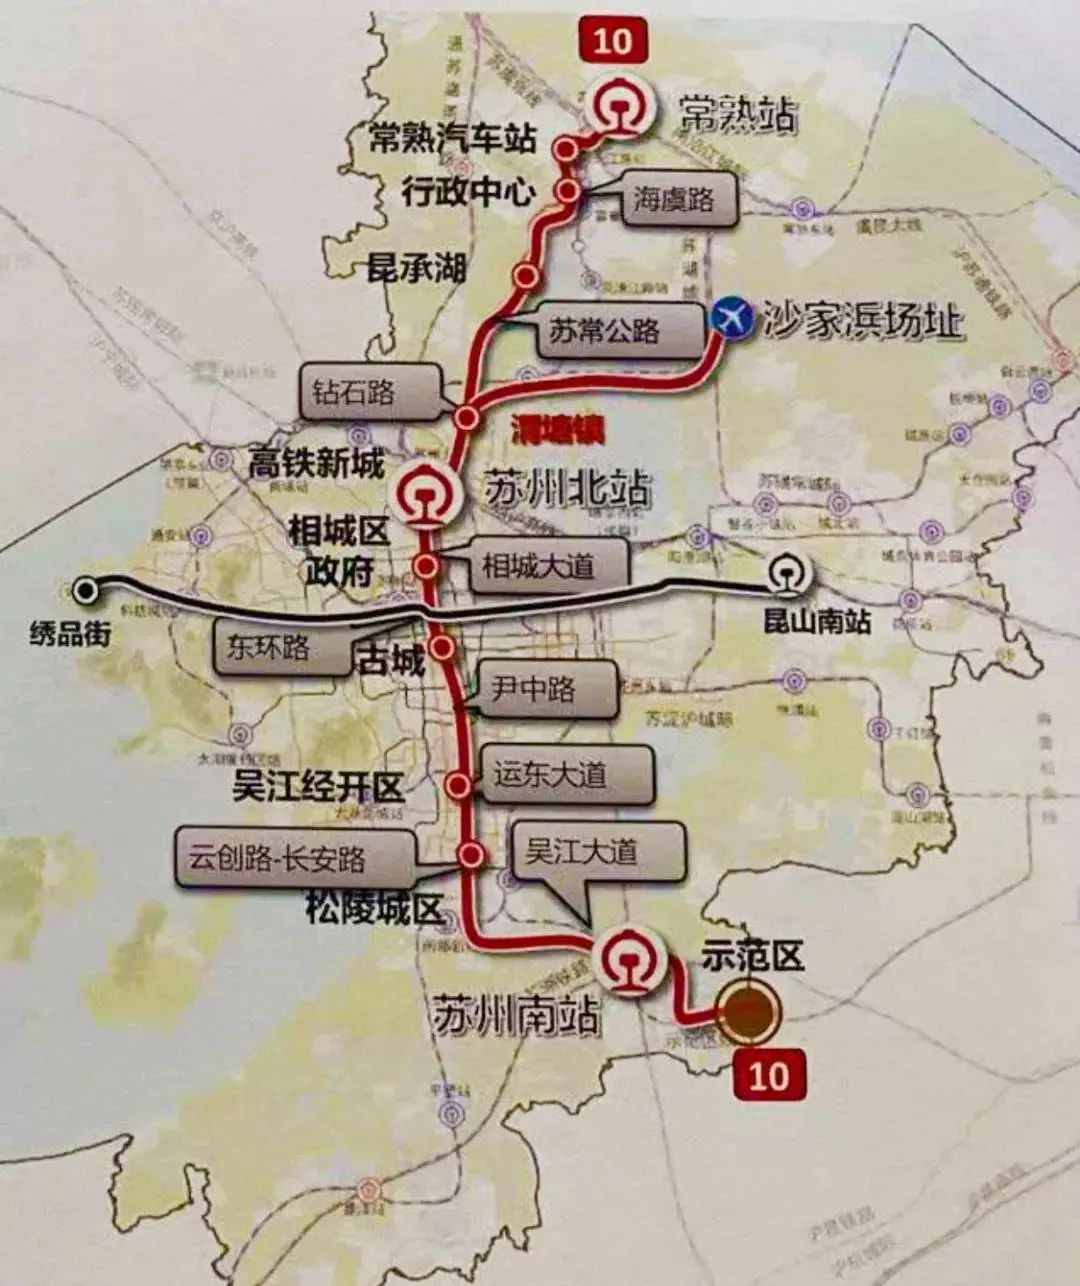 上海苏州地铁将无缝对接,一站式打卡8大宝藏景点!